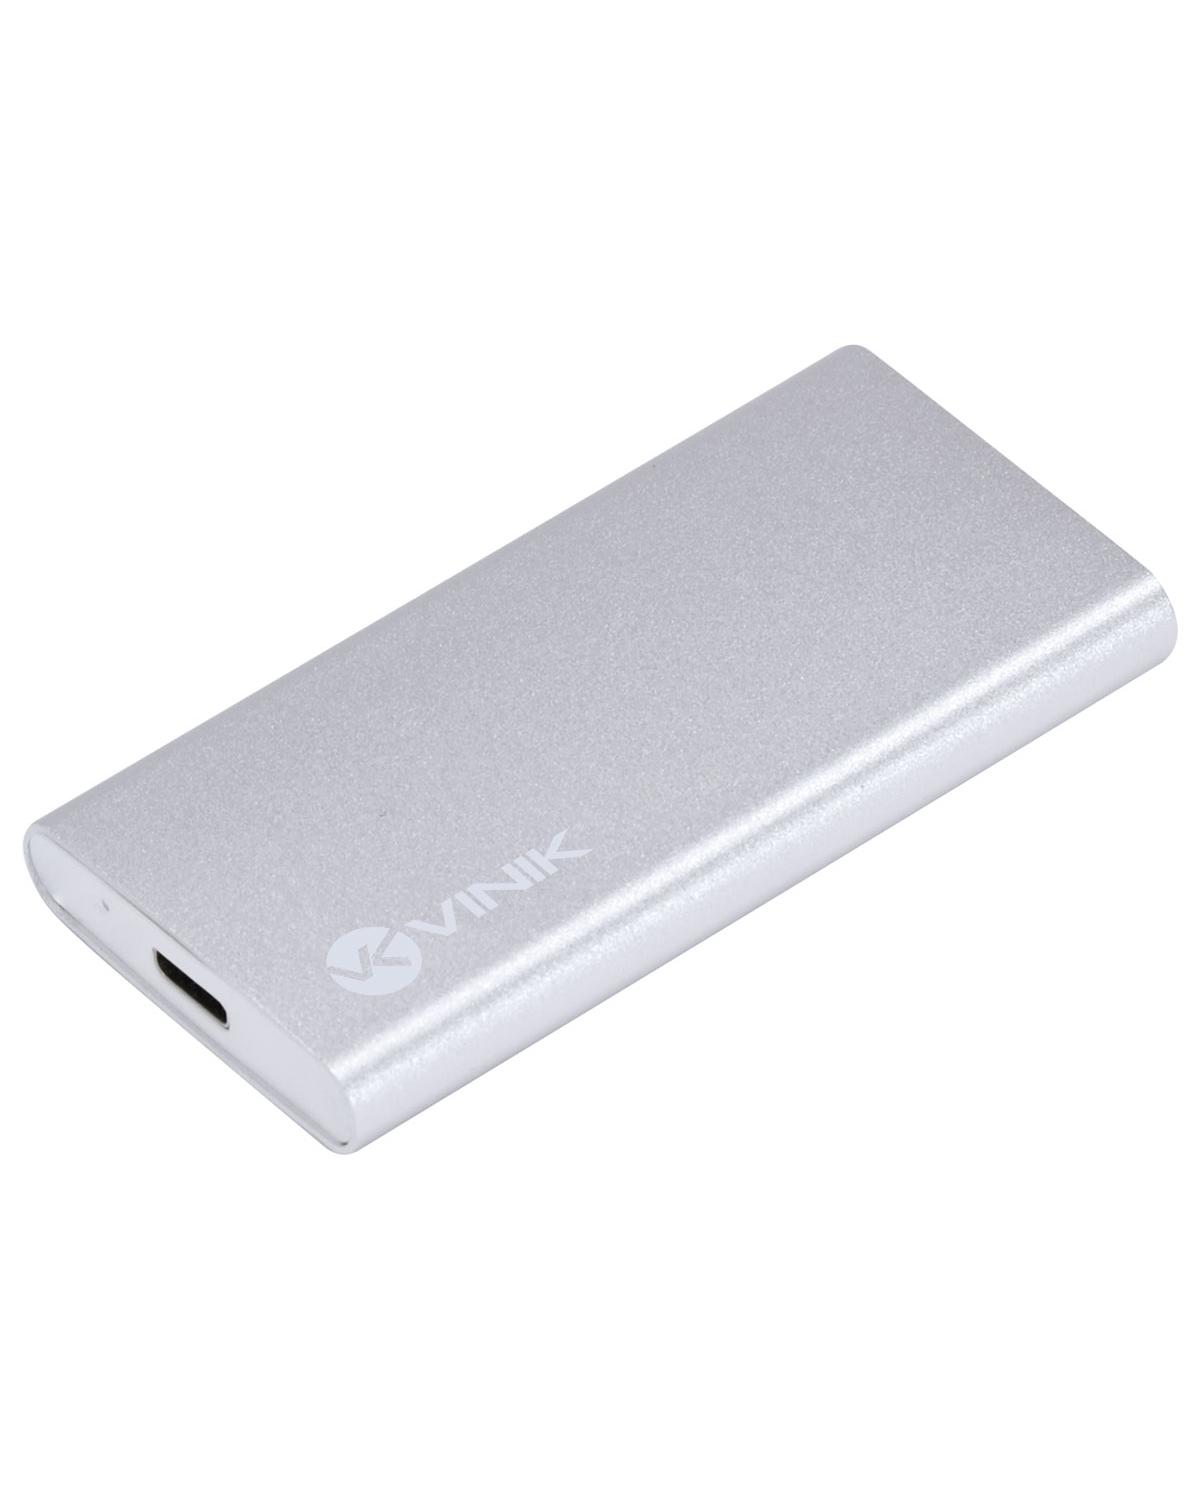 CASE EXTERNO PARA SSD MSATA CONEXÃO USB TIPO C / TYPE C 3.1 PARA USB - CS25-A31